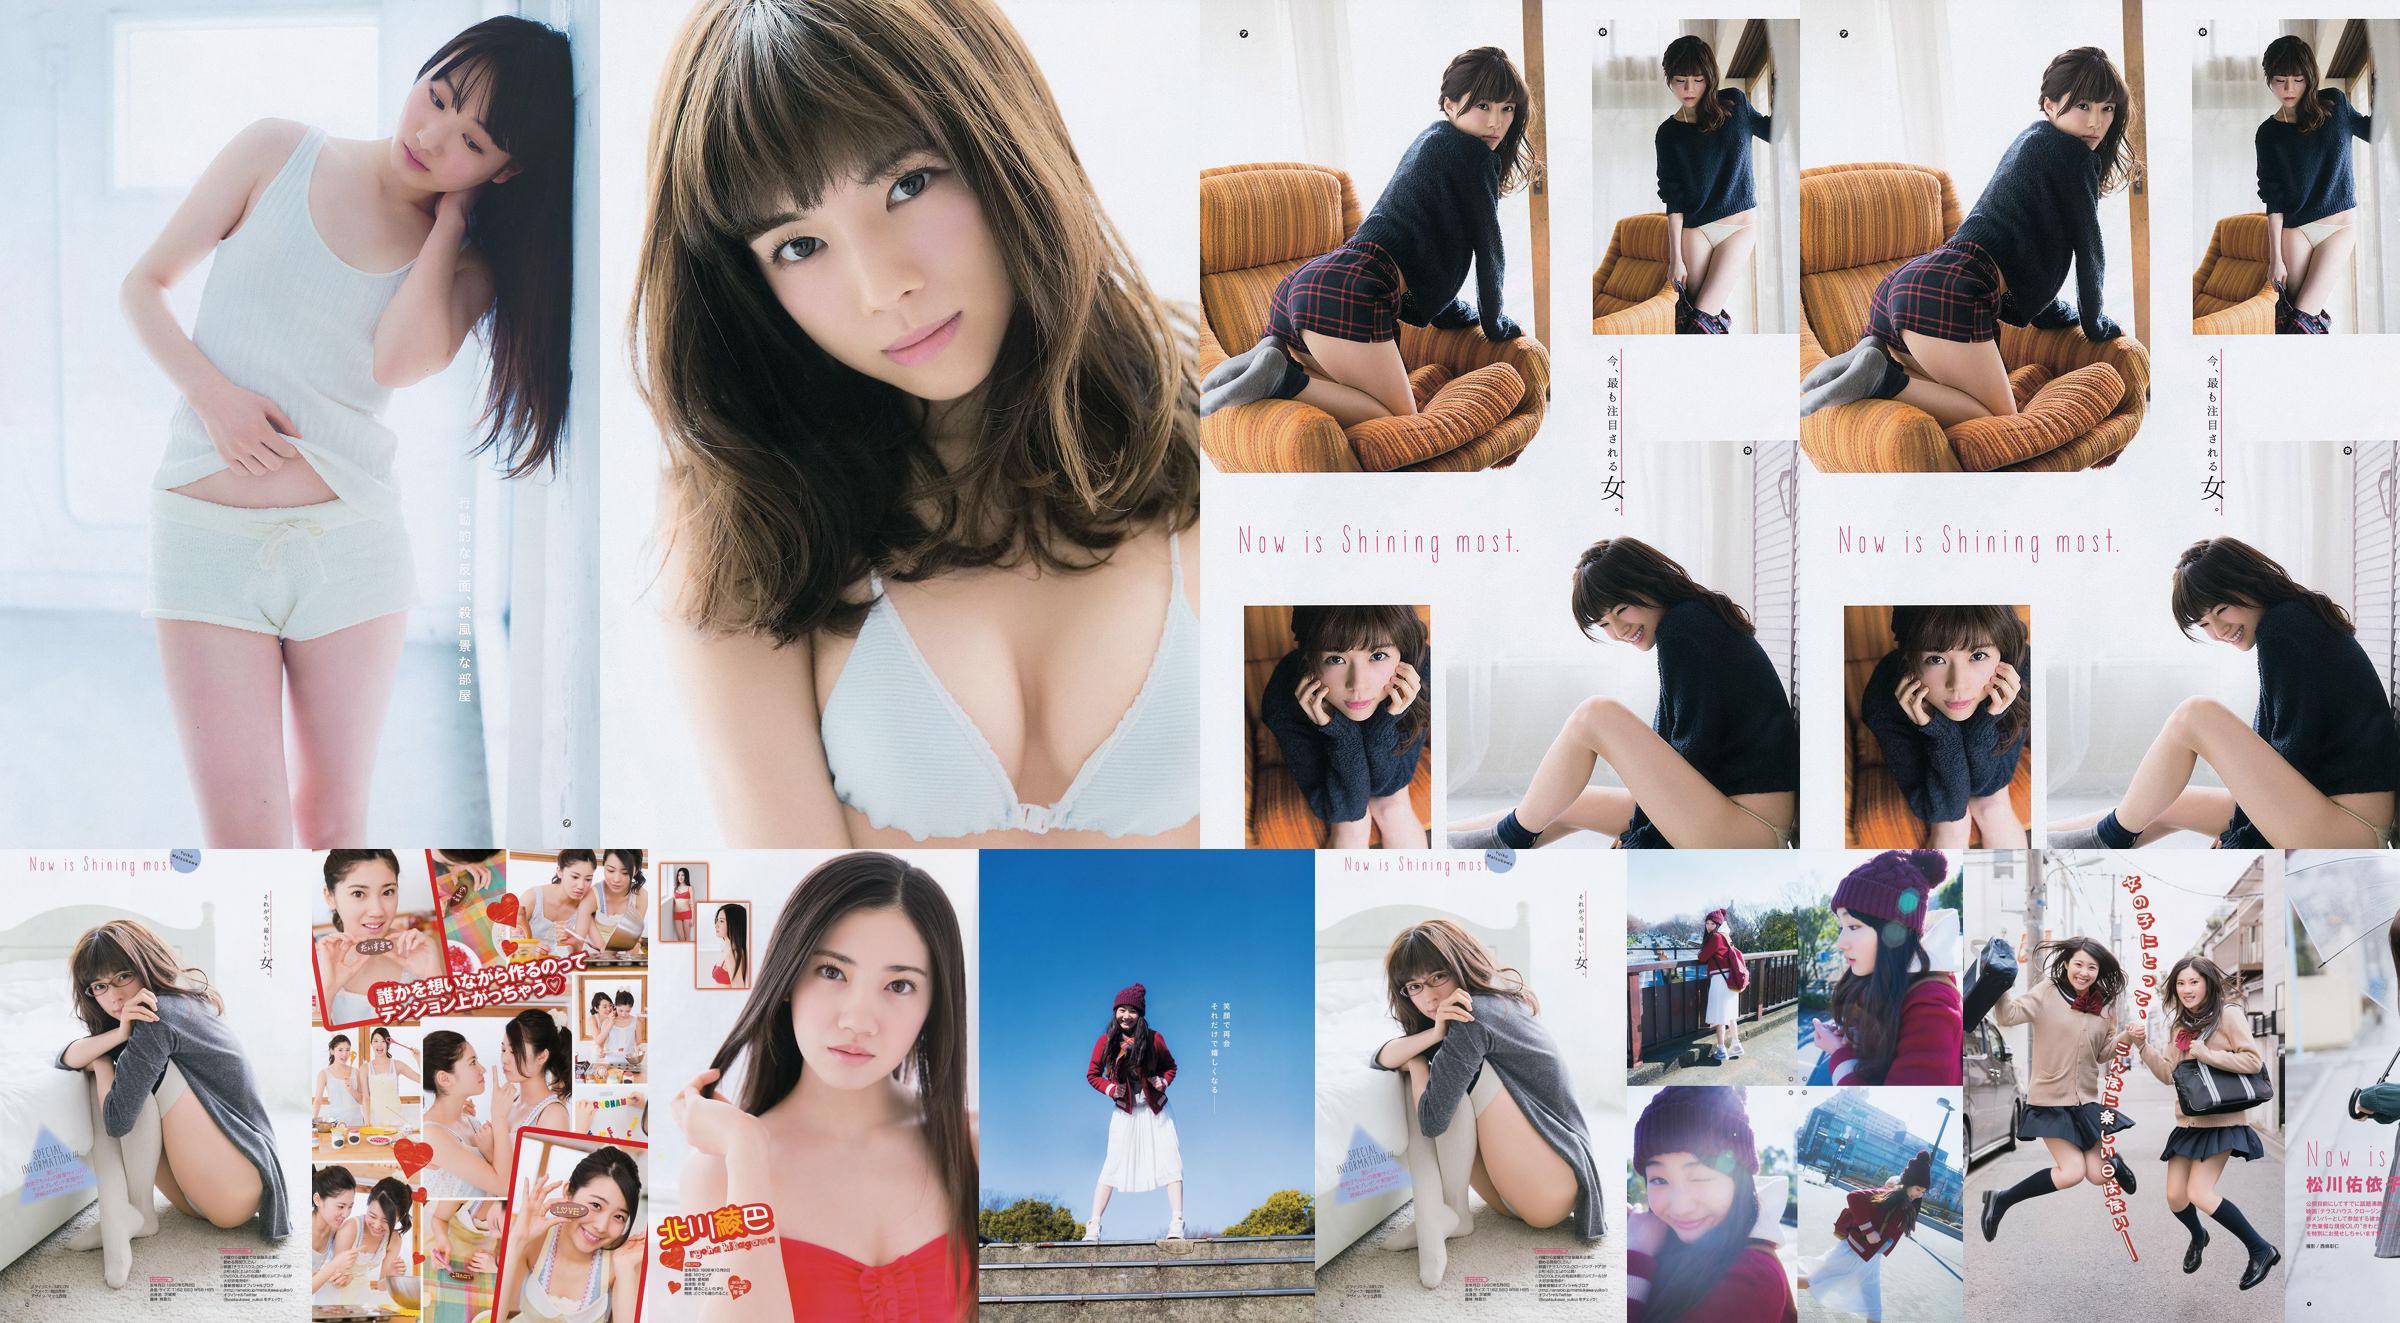 [Young Gangan] Ryoha Kitagawa Ami Miyamae Yuiko Matsukawa Narumi Akizuki 2015 No.04 Photograph No.f9774d Page 3